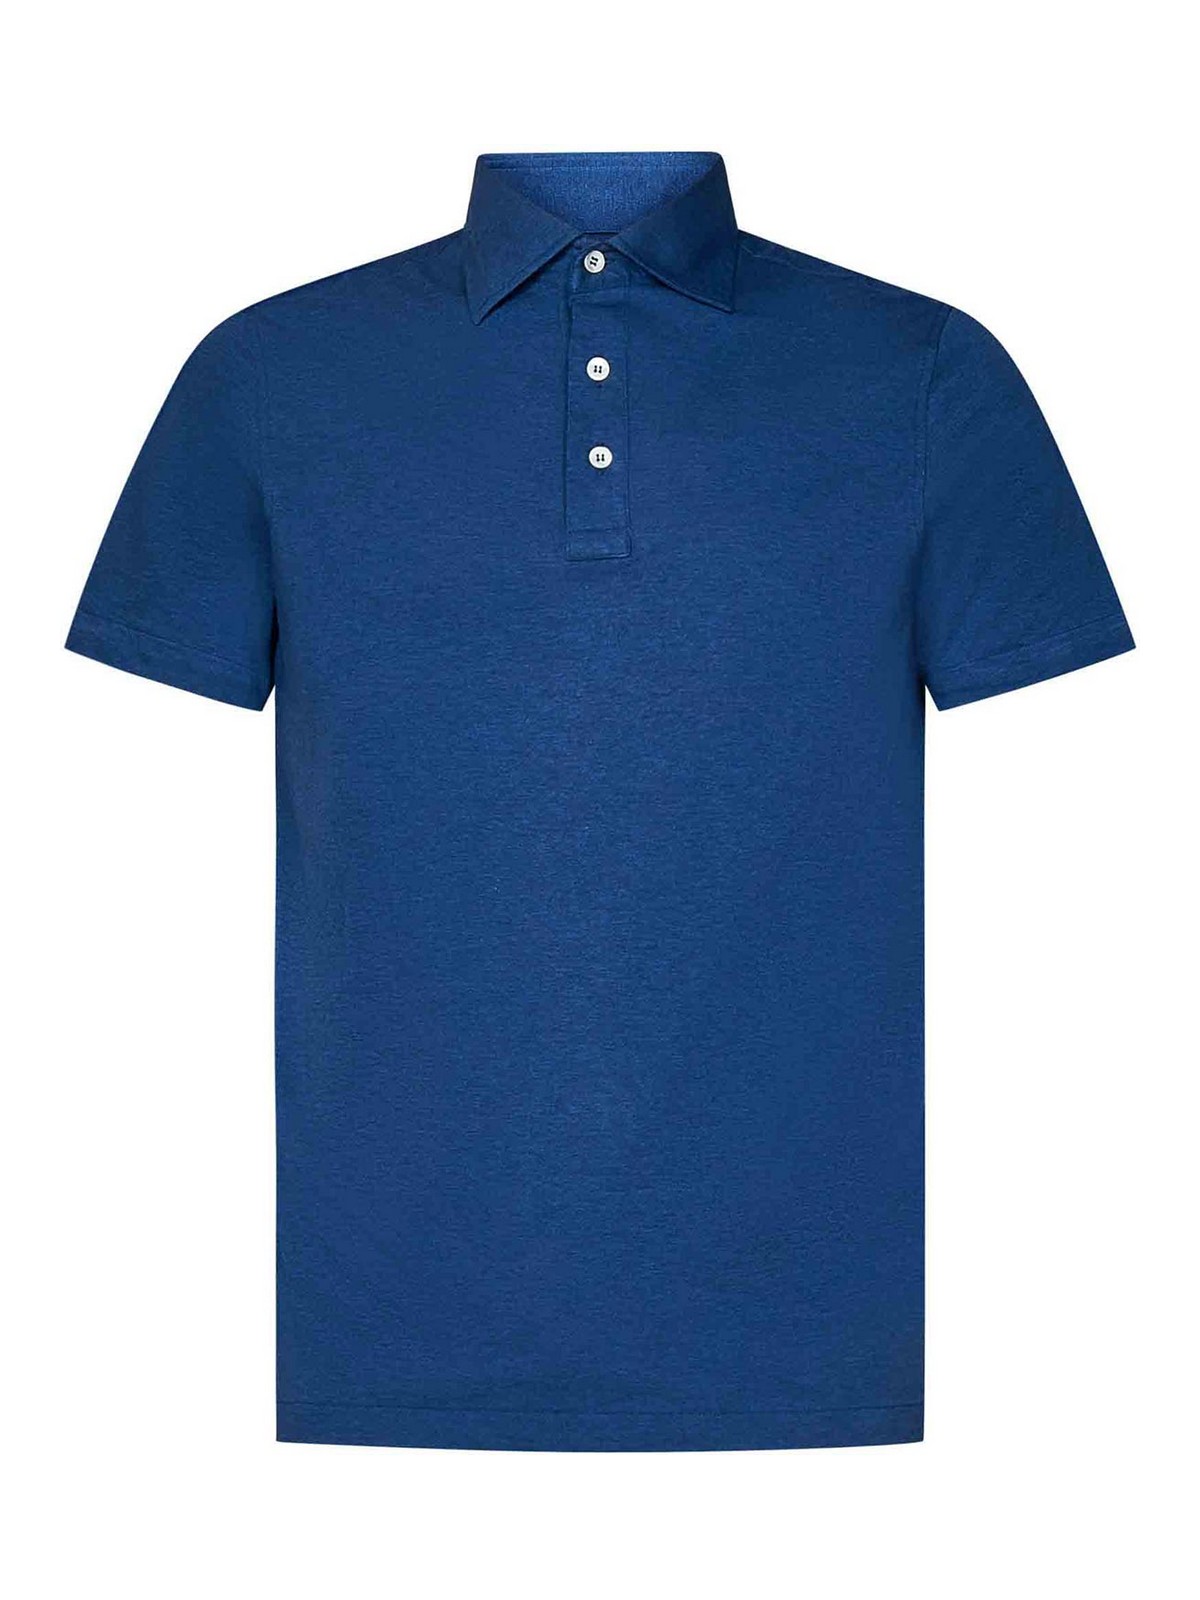 Shop Luigi Borrelli Blue Cotton Jersey Polo Shirt